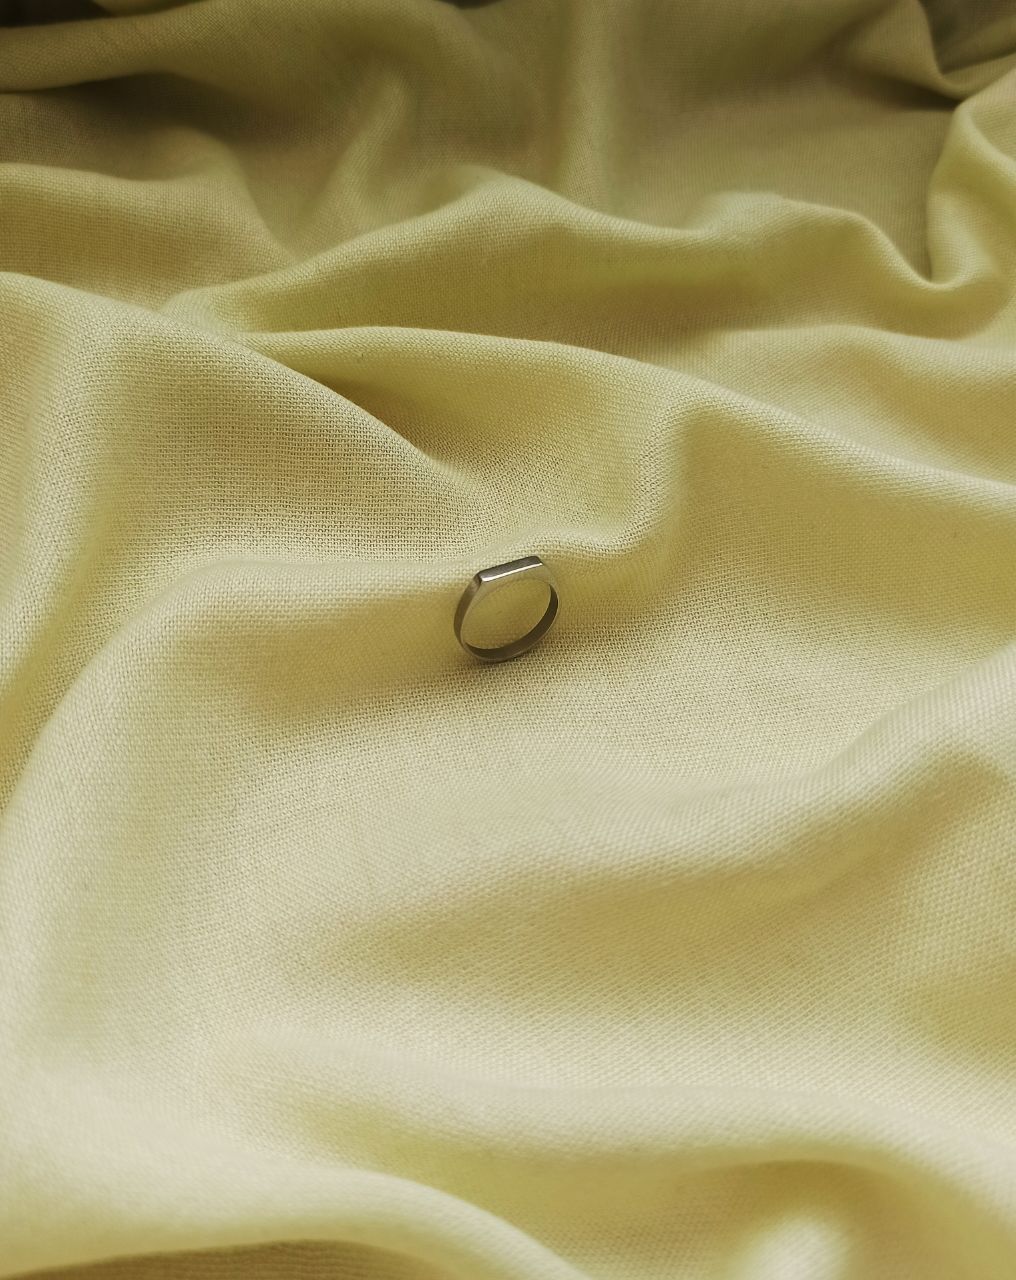 Минималистическое кольцо, кільце в стилі мінімалізм